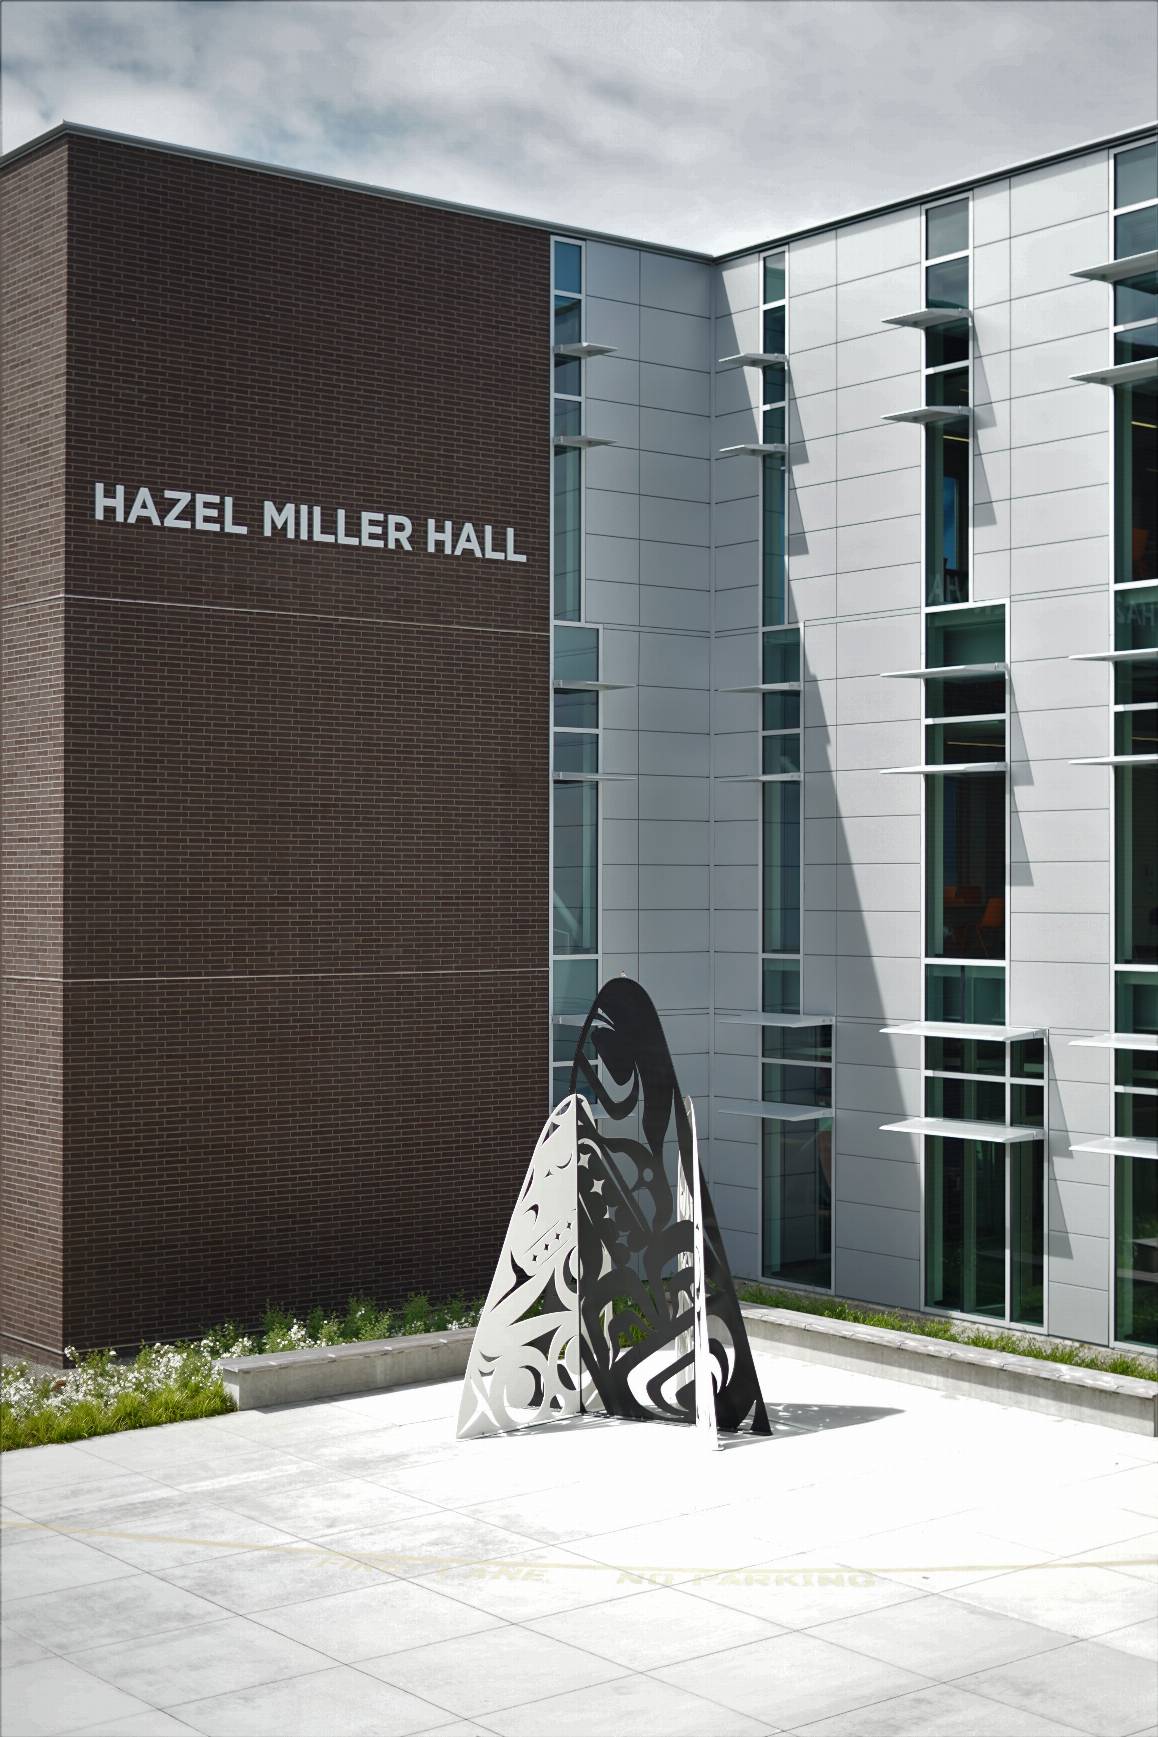 黑兹尔·米勒大厅外的雕塑照片。